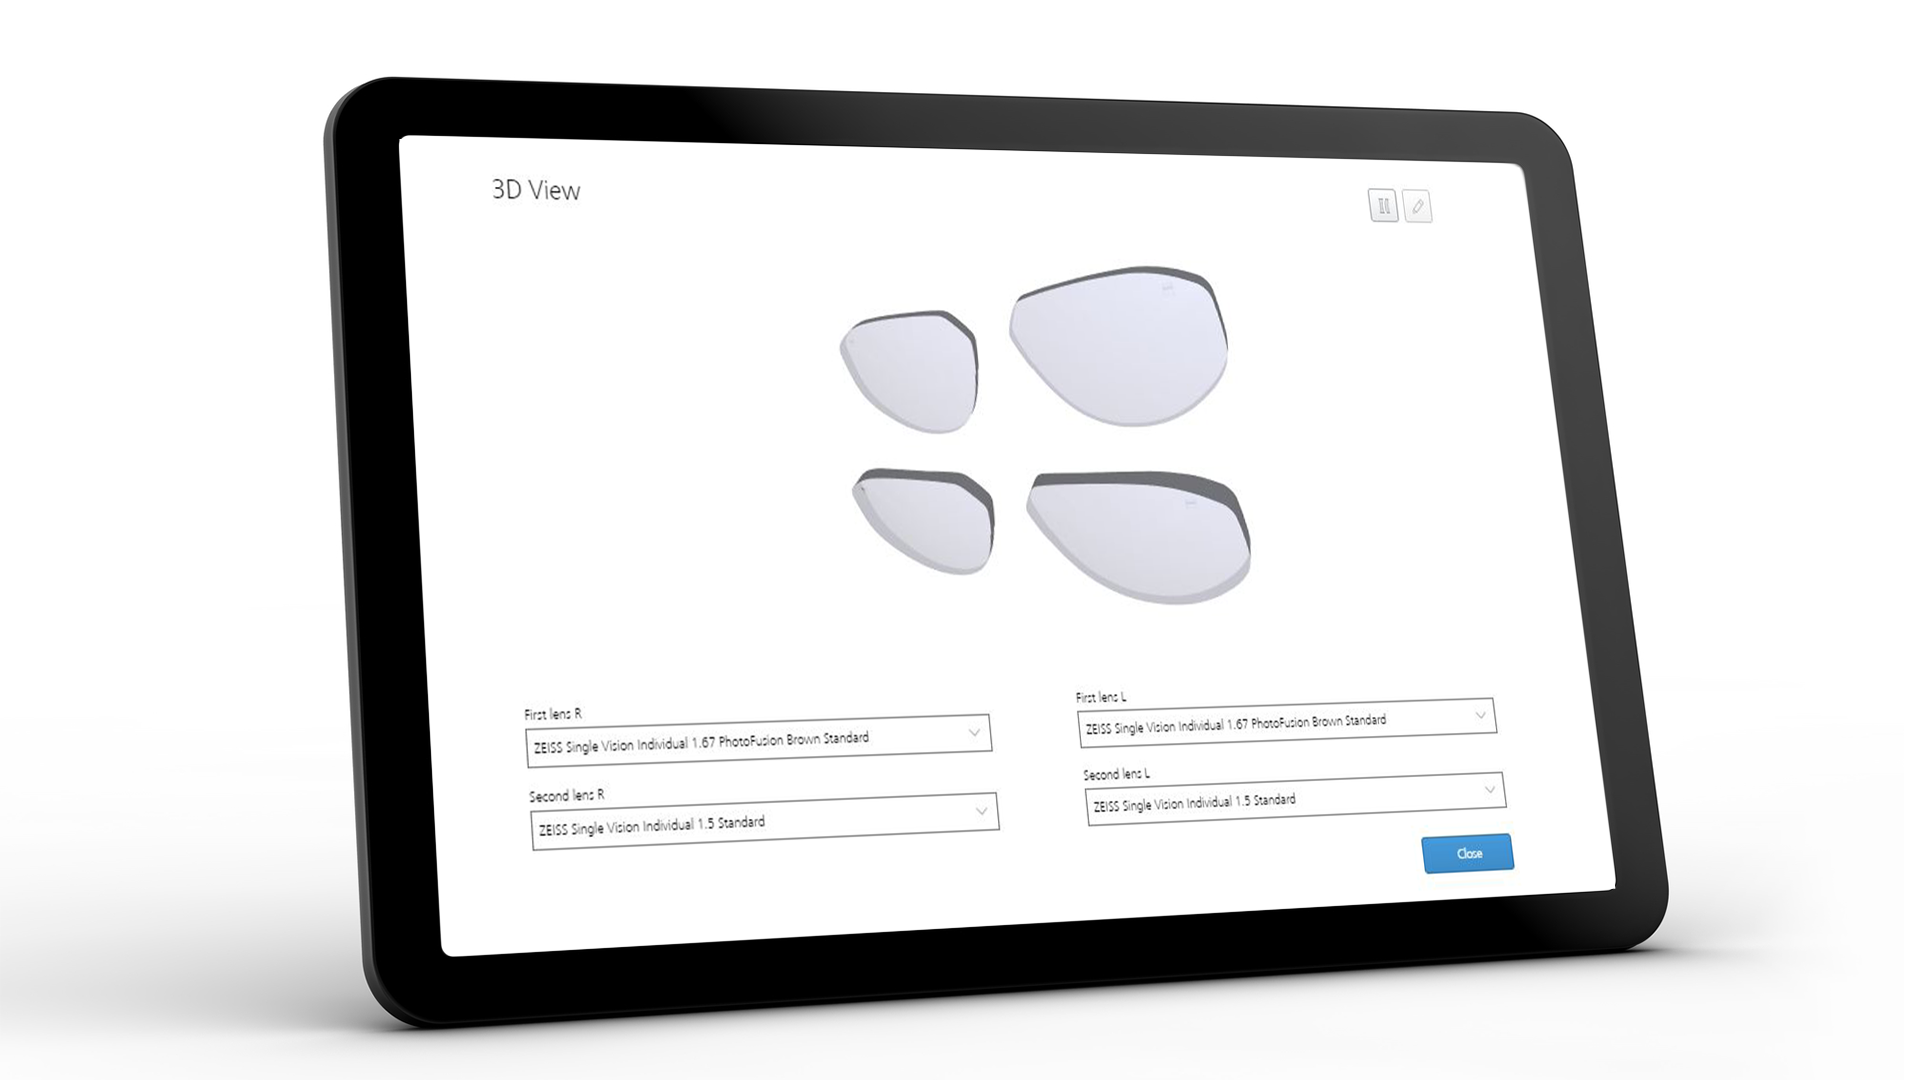 平板電腦螢幕顯示蔡司 VISUSTORE 的 3D 視圖介面 